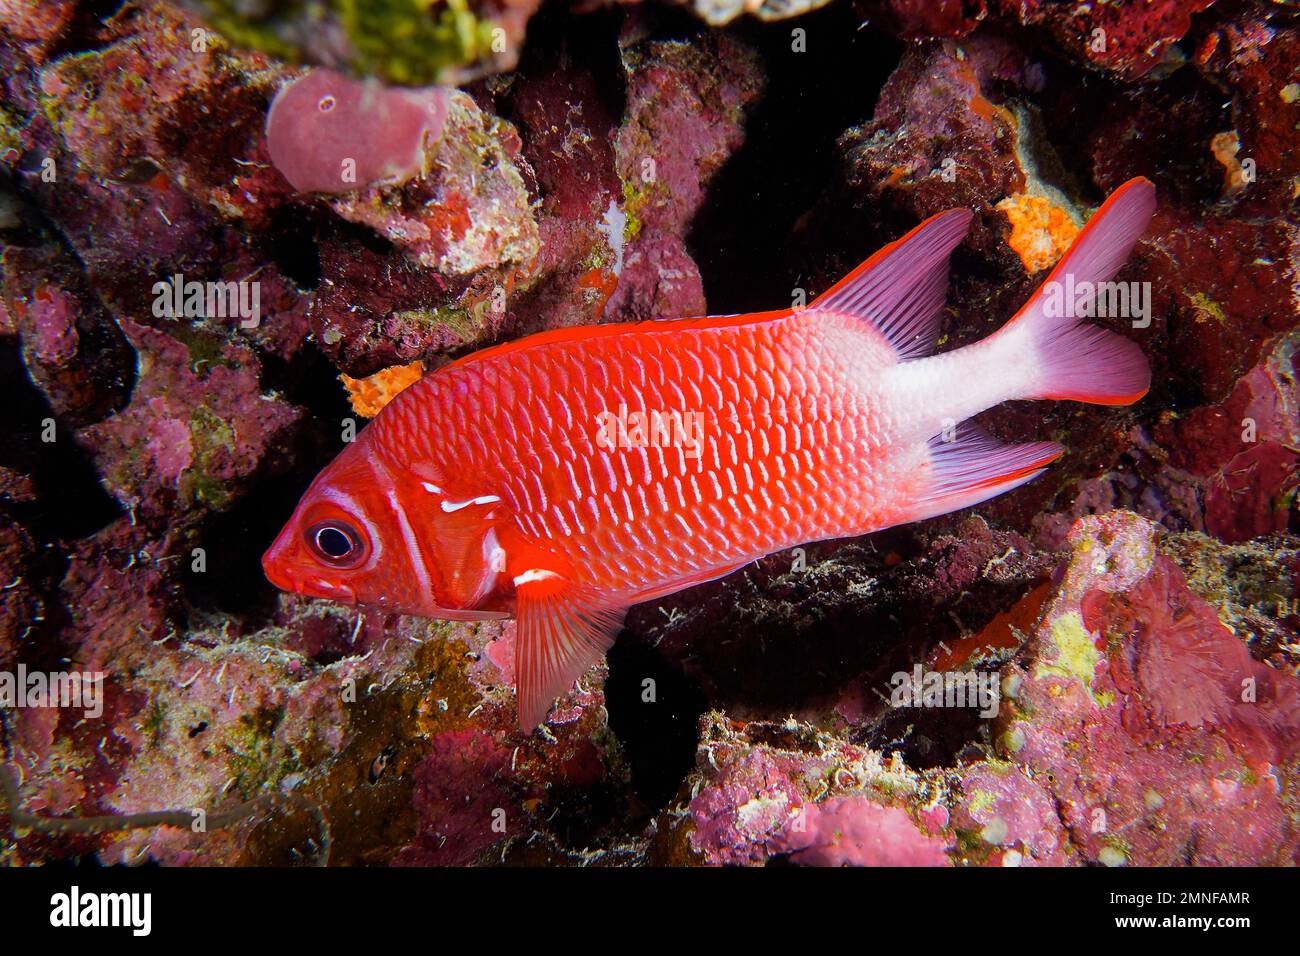 Bucato di argento rosso (Sargocentron caudimaculatum) nella barriera corallina rossa. Sito di immersione piccolo Fratello, Isole Brother, Egitto, Mar Rosso Foto Stock